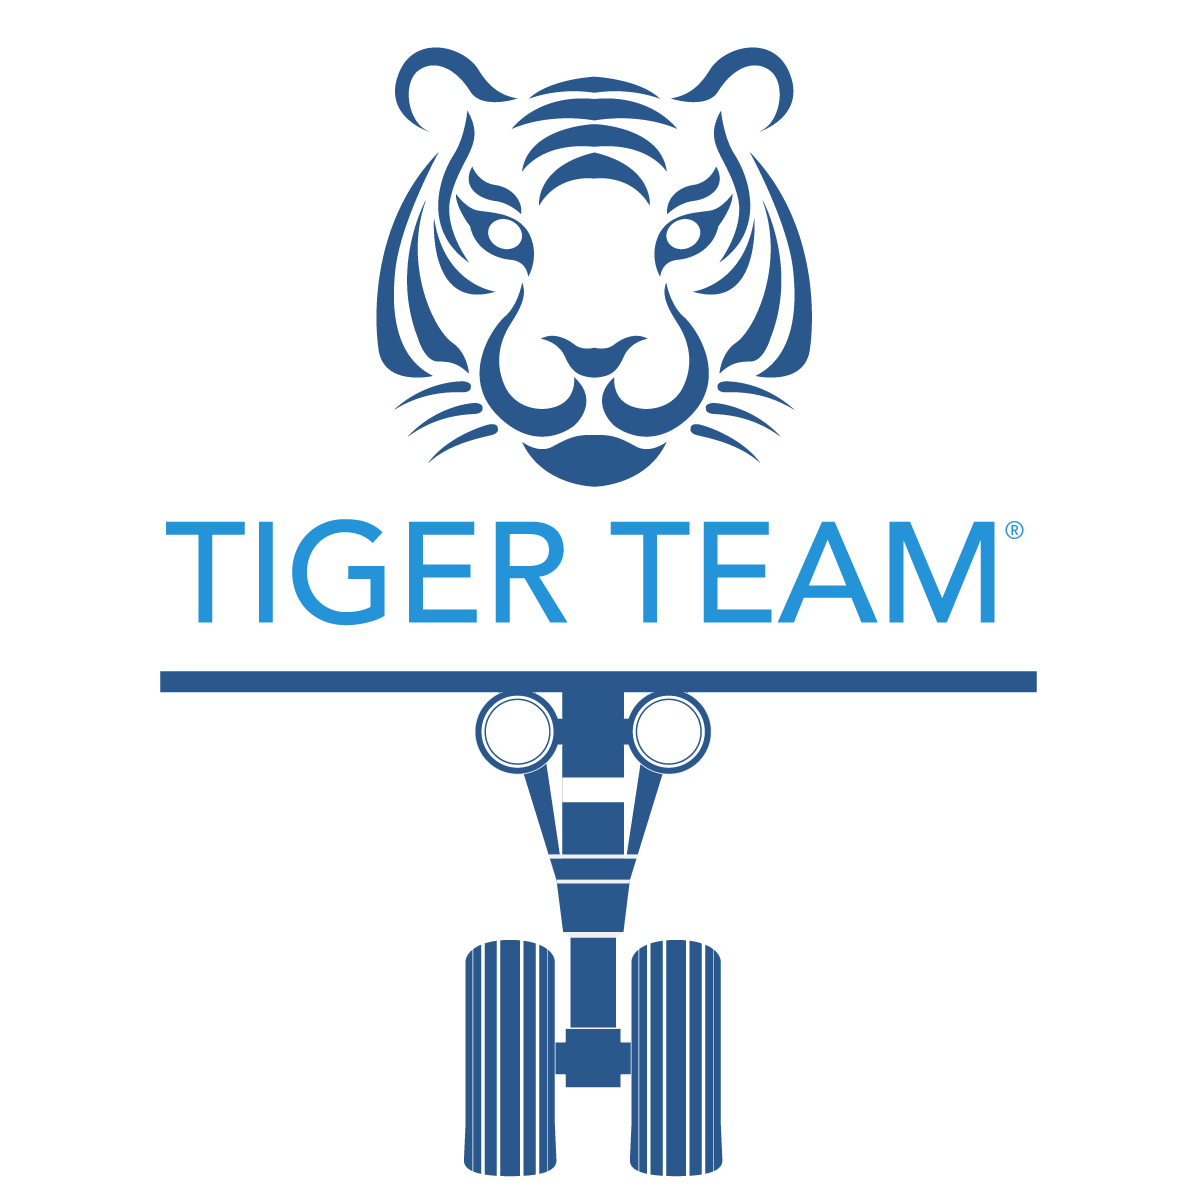 TIGER TEAM logo